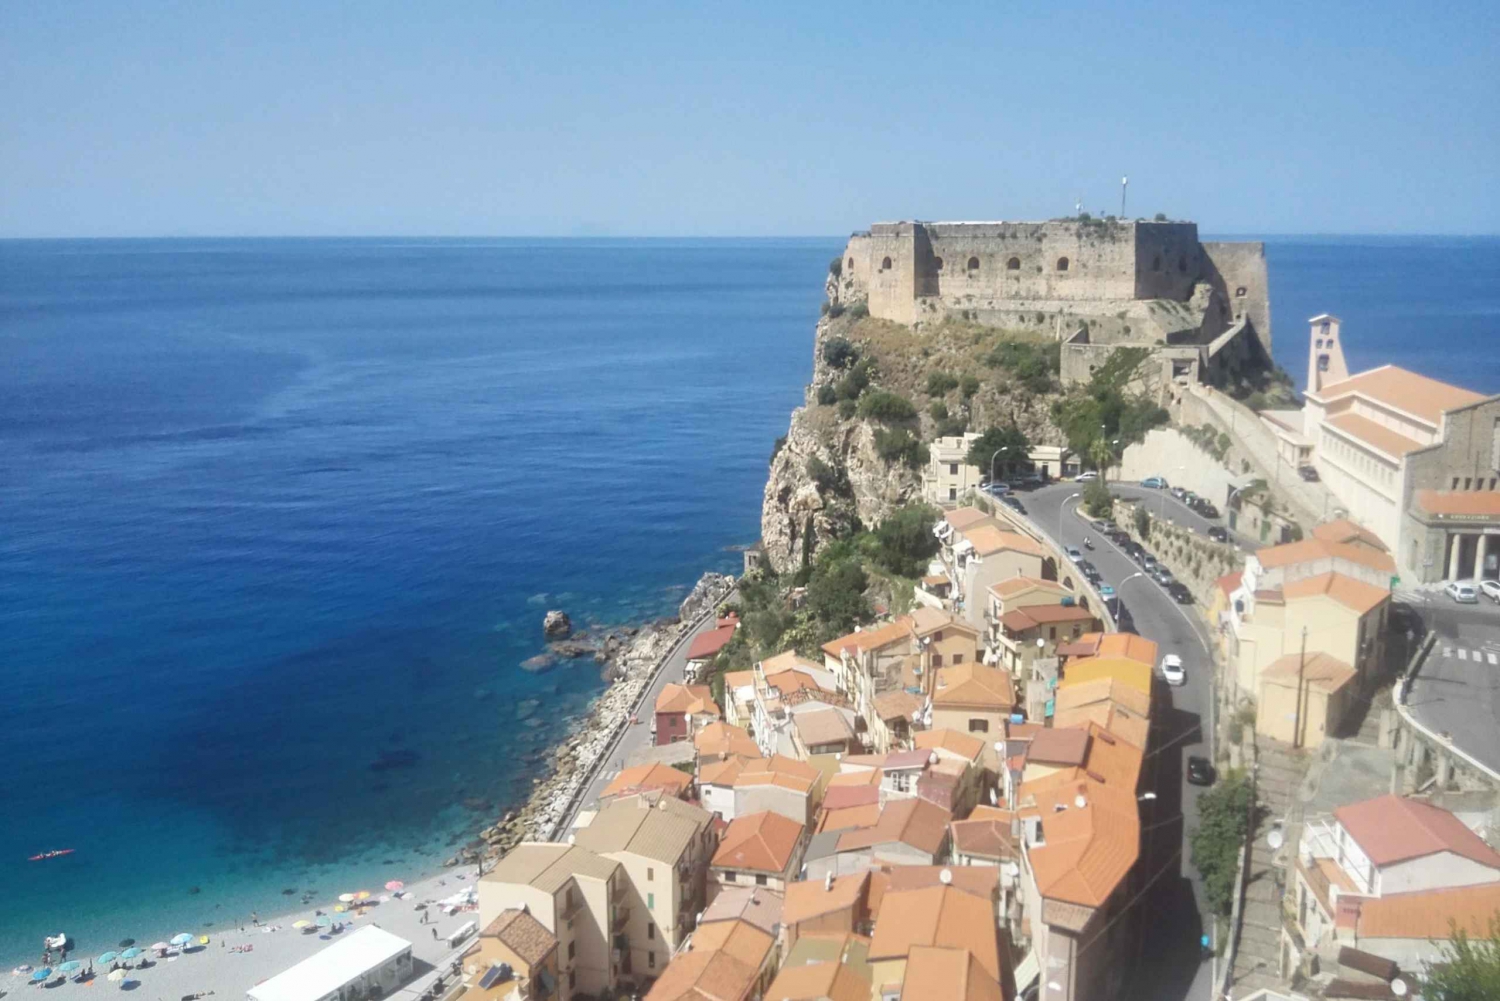 Catania: Excursión al Padrino de Savoca y Taormina con degustación gastronómica